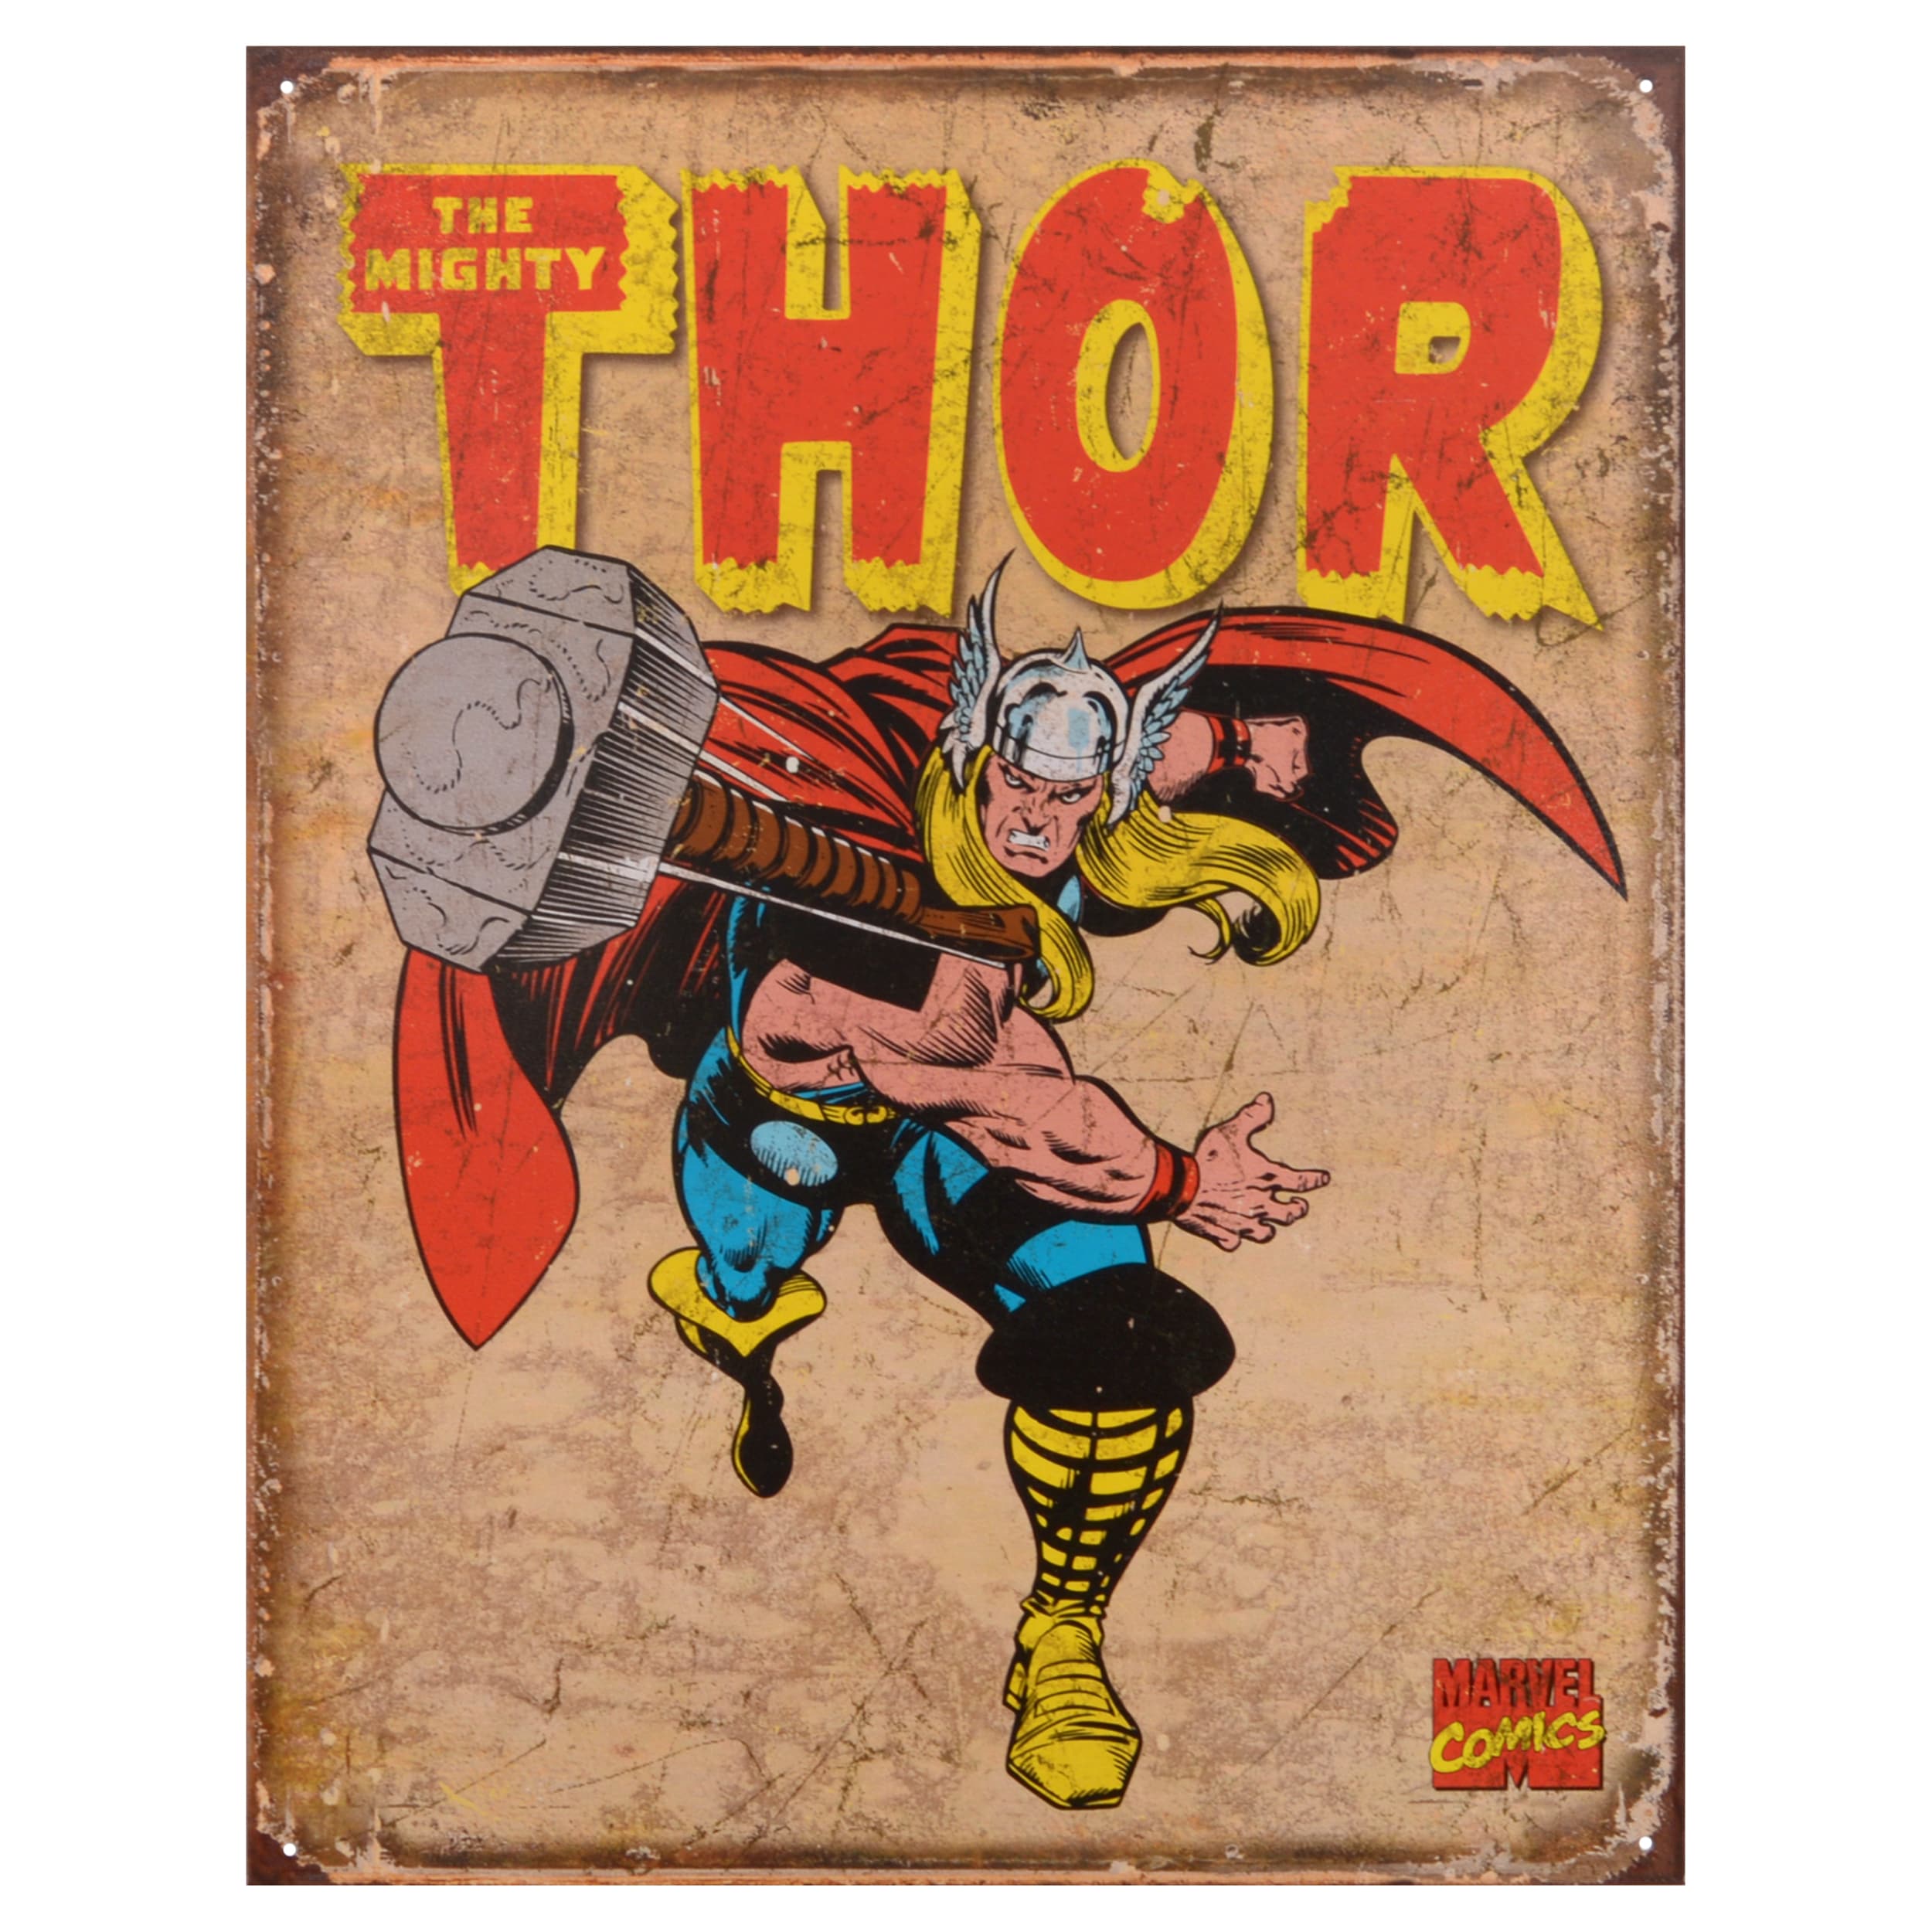 The Mighty Thor Retro Tin Superhero Sign